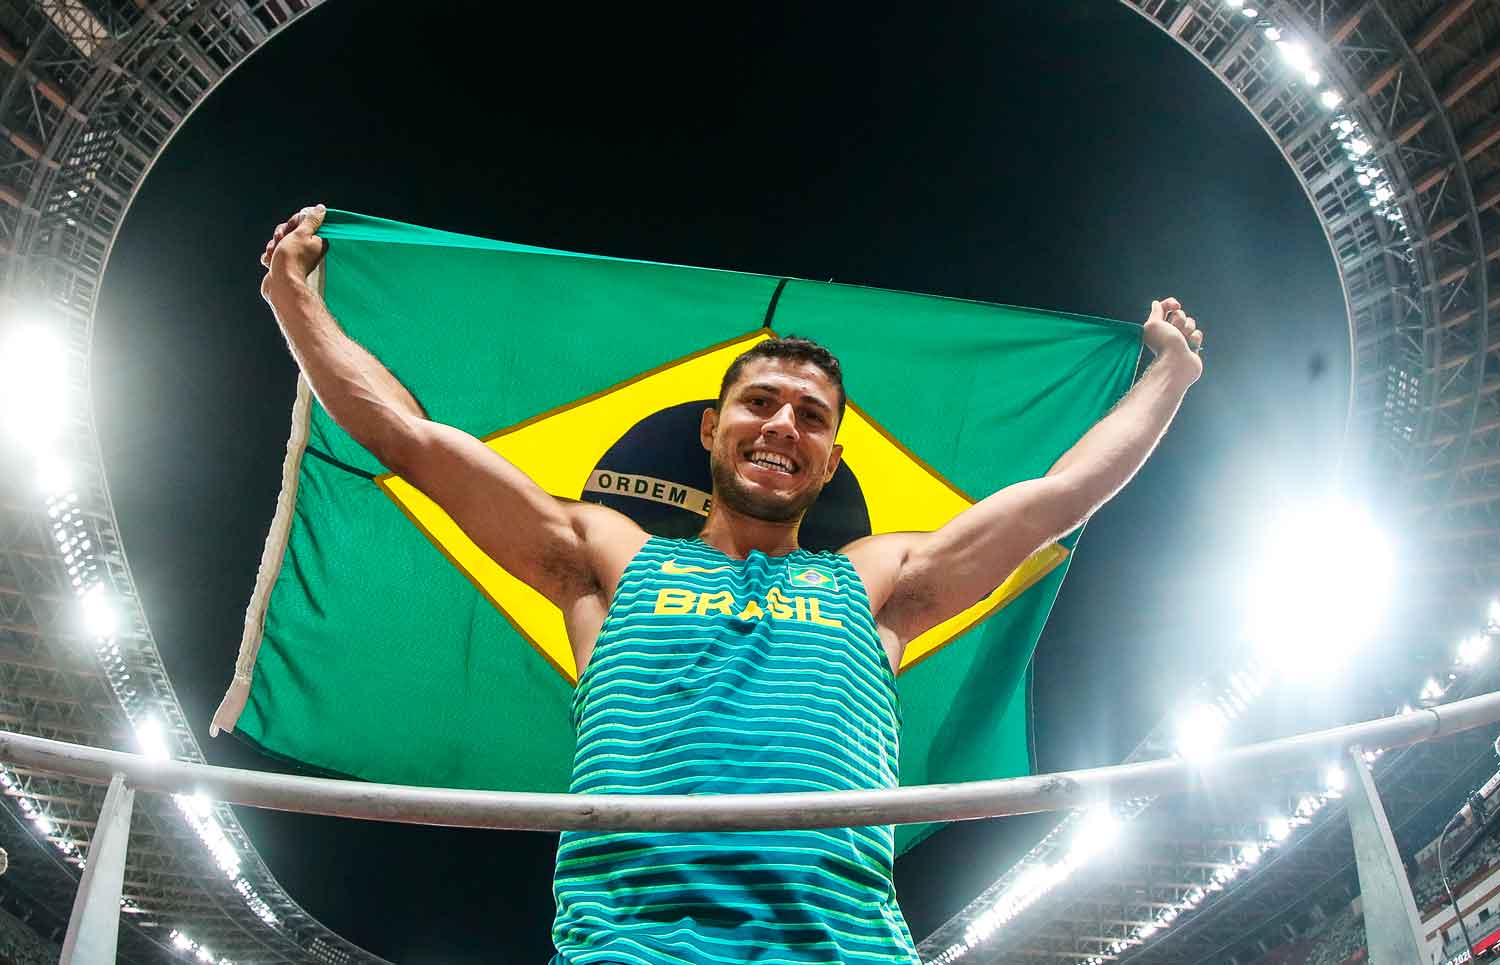 Thiago Braz usa ginástica para se reinventar após Tóquio e mira pódio em Mundial: “Estou aqui para ganhar”